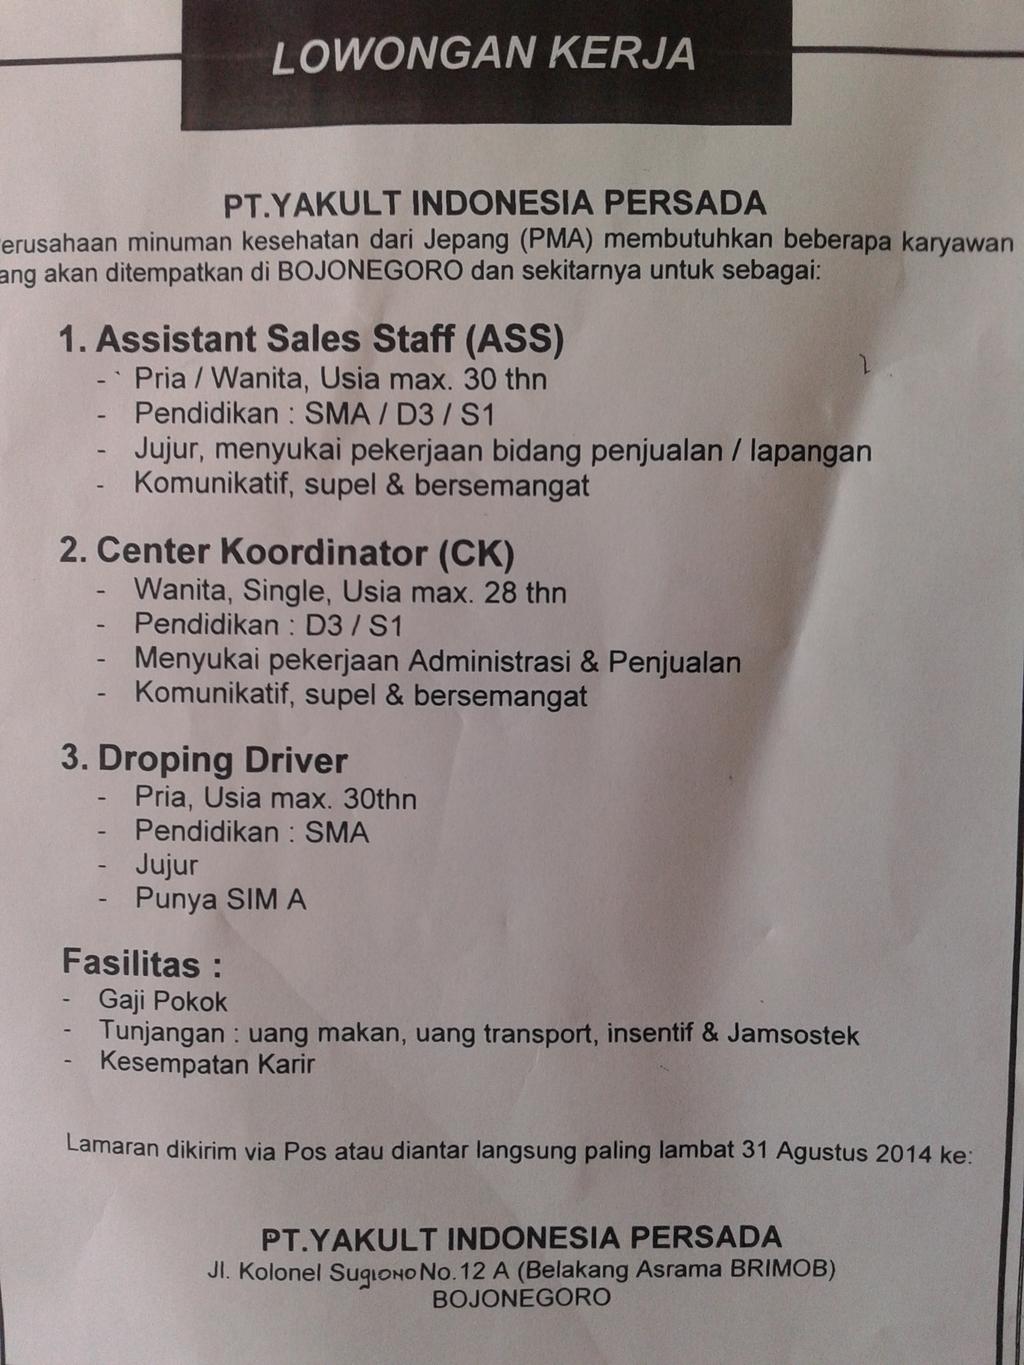 Disnakertransos Bjn в Twitter: „Lowongan kerja PT. YAKULT INDONESIA PERSADA  unt wilayah Bojonegoro dan sekitar nya http://t.co/66idwiljsr“ / Twitter